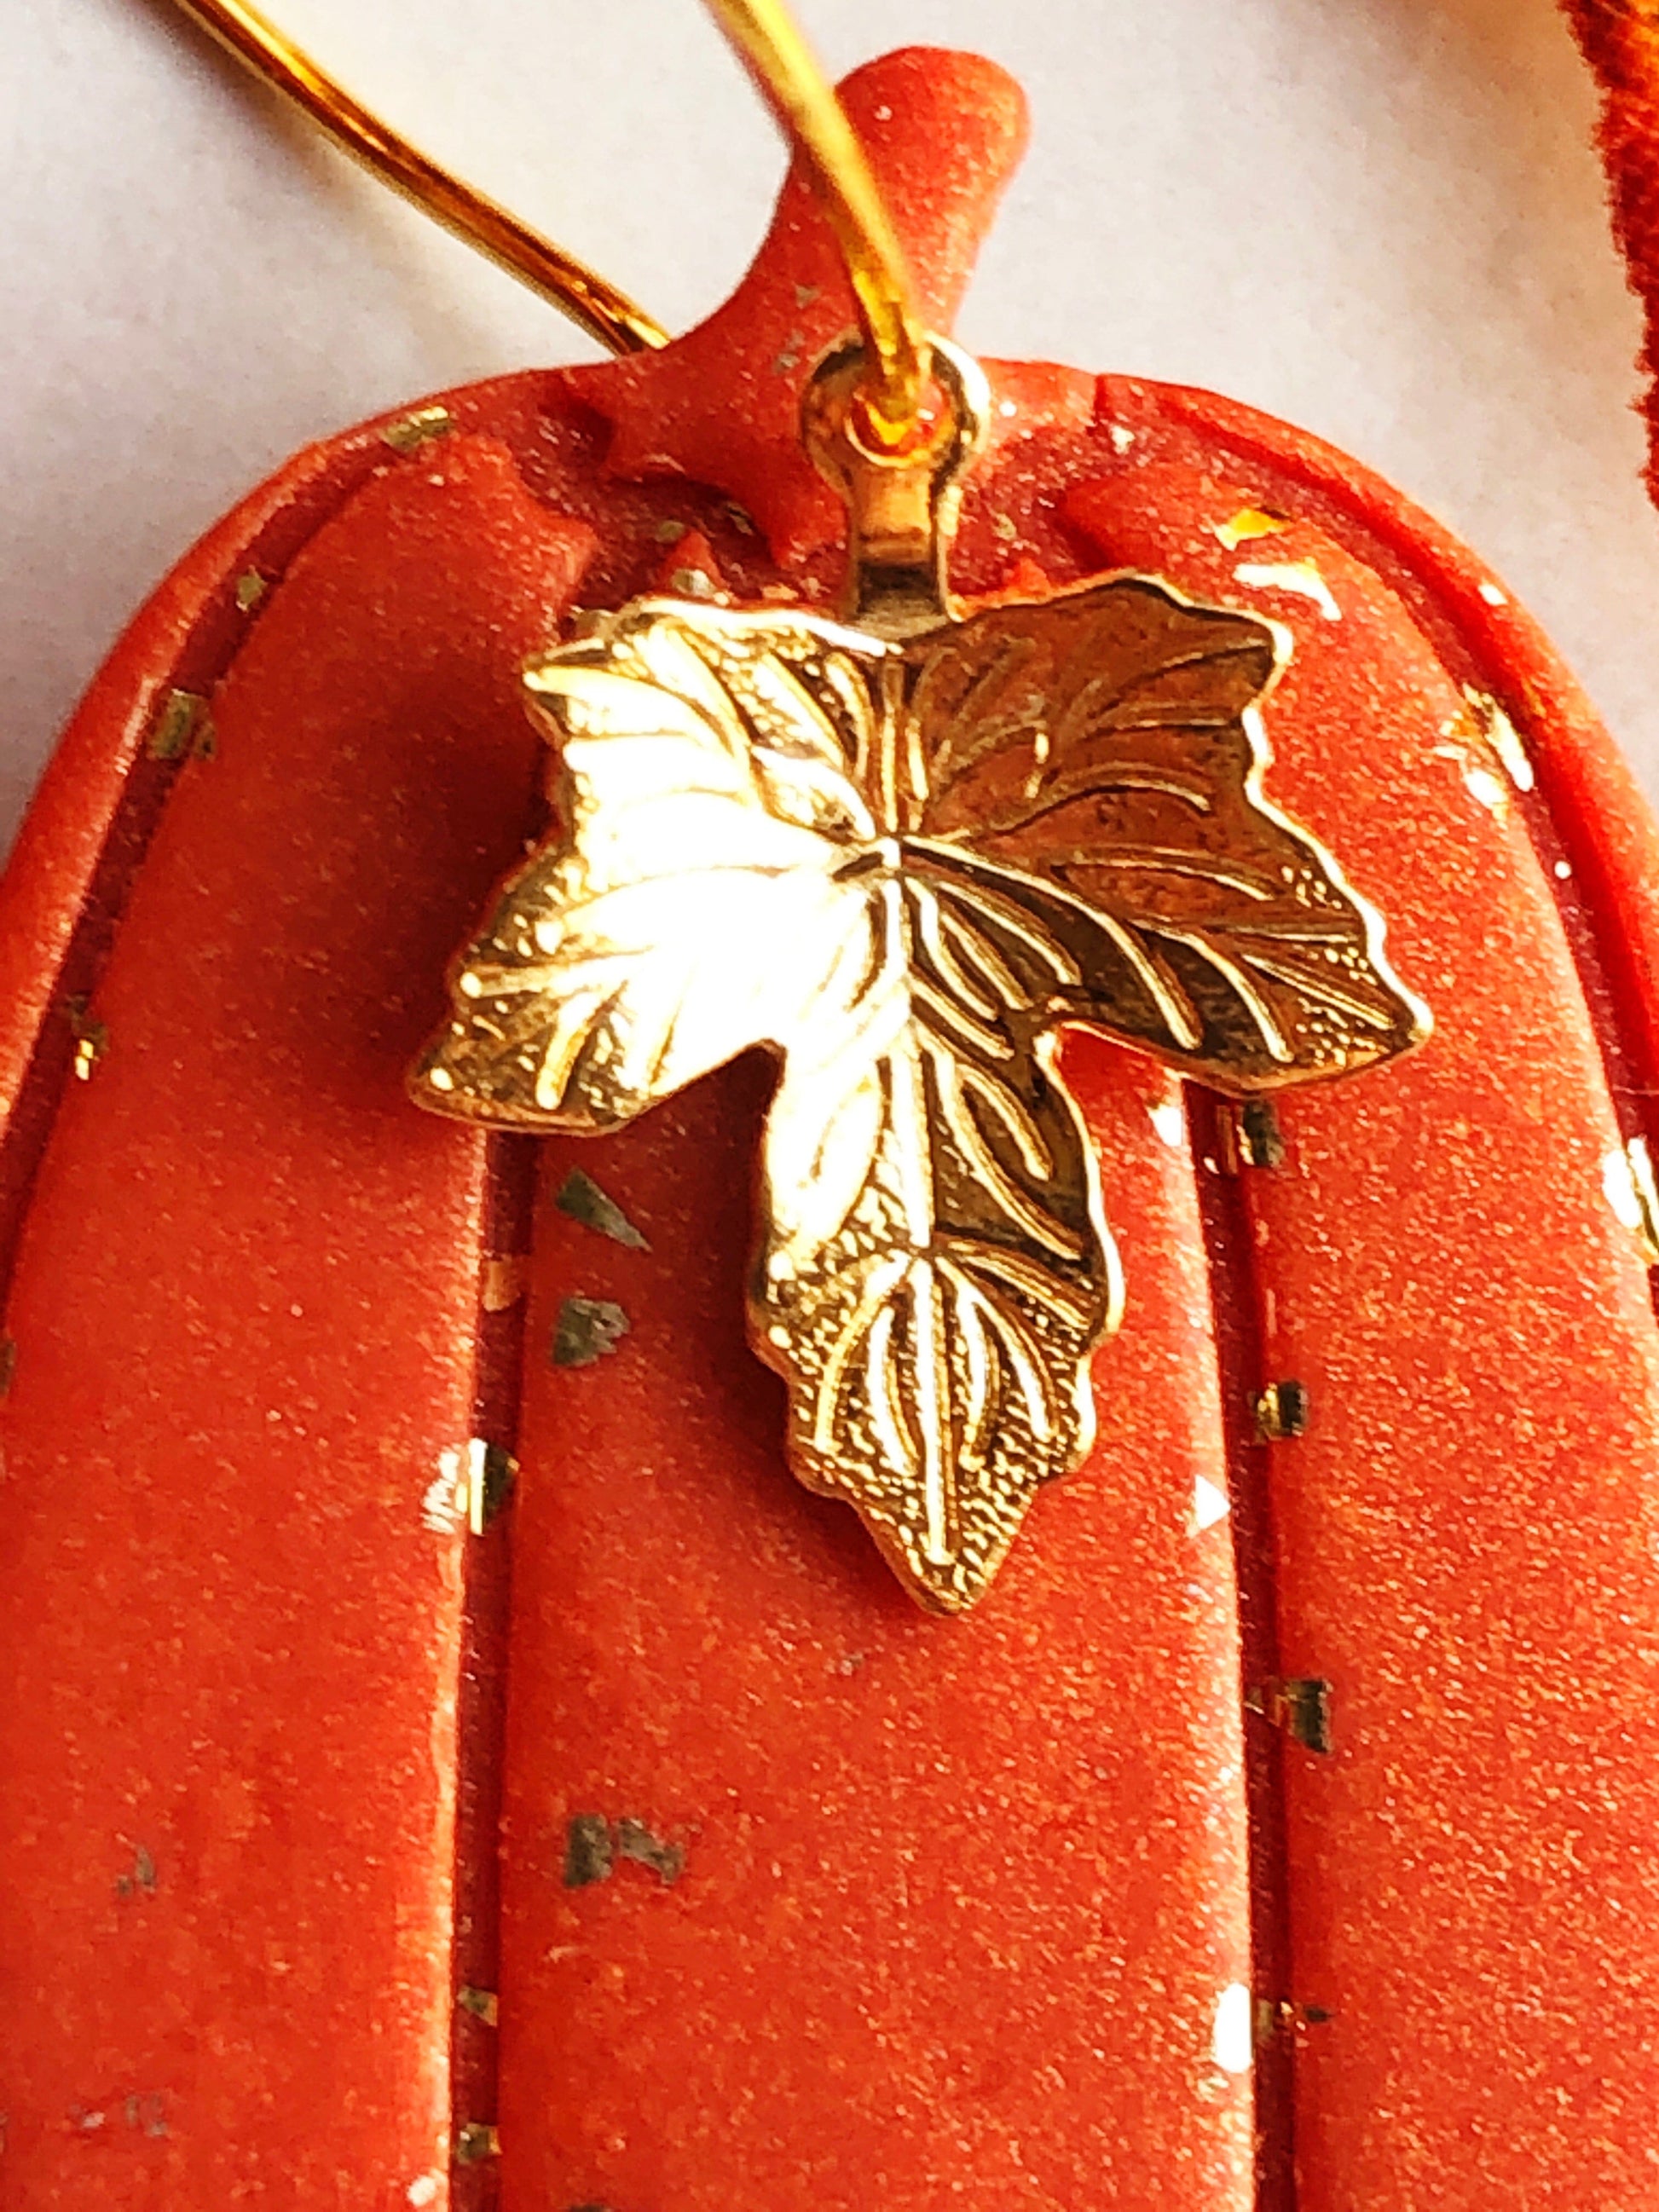 Earrings Hazan - Tall Orange Pumpkin with Gold Maple Leag Charm Hoop Earrings